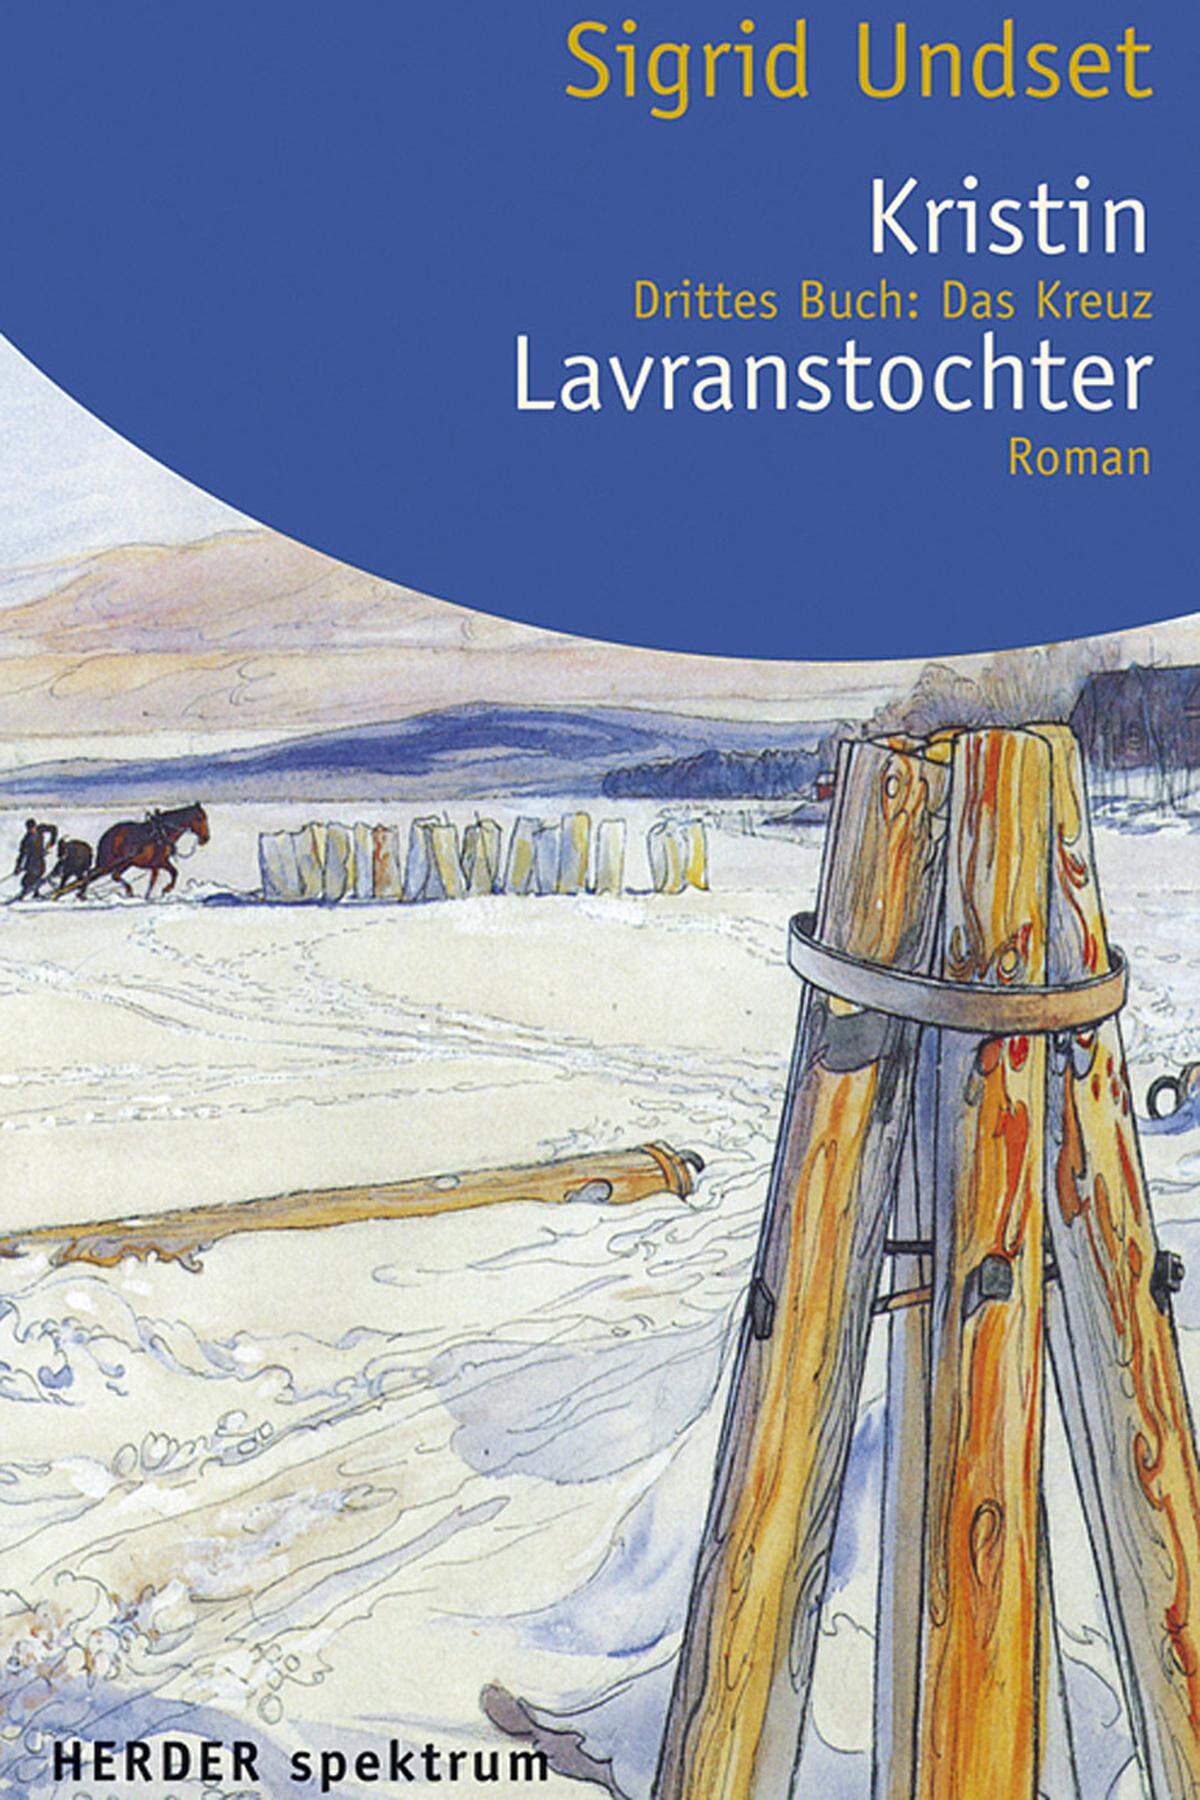 (Norwegen, 1882-1949)  Undset wurde ausgezeichnet "vornehmlich für ihre kraftvollen Schilderungen aus dem mittelalterlichen Leben des (skandinavischen) Nordens". Ihre Romantrilogie "Kristin Lavranstochter", die im 13. und 14. Jahrhundert spielt, ist ein Hauptwerk der norwegischen Literatur.